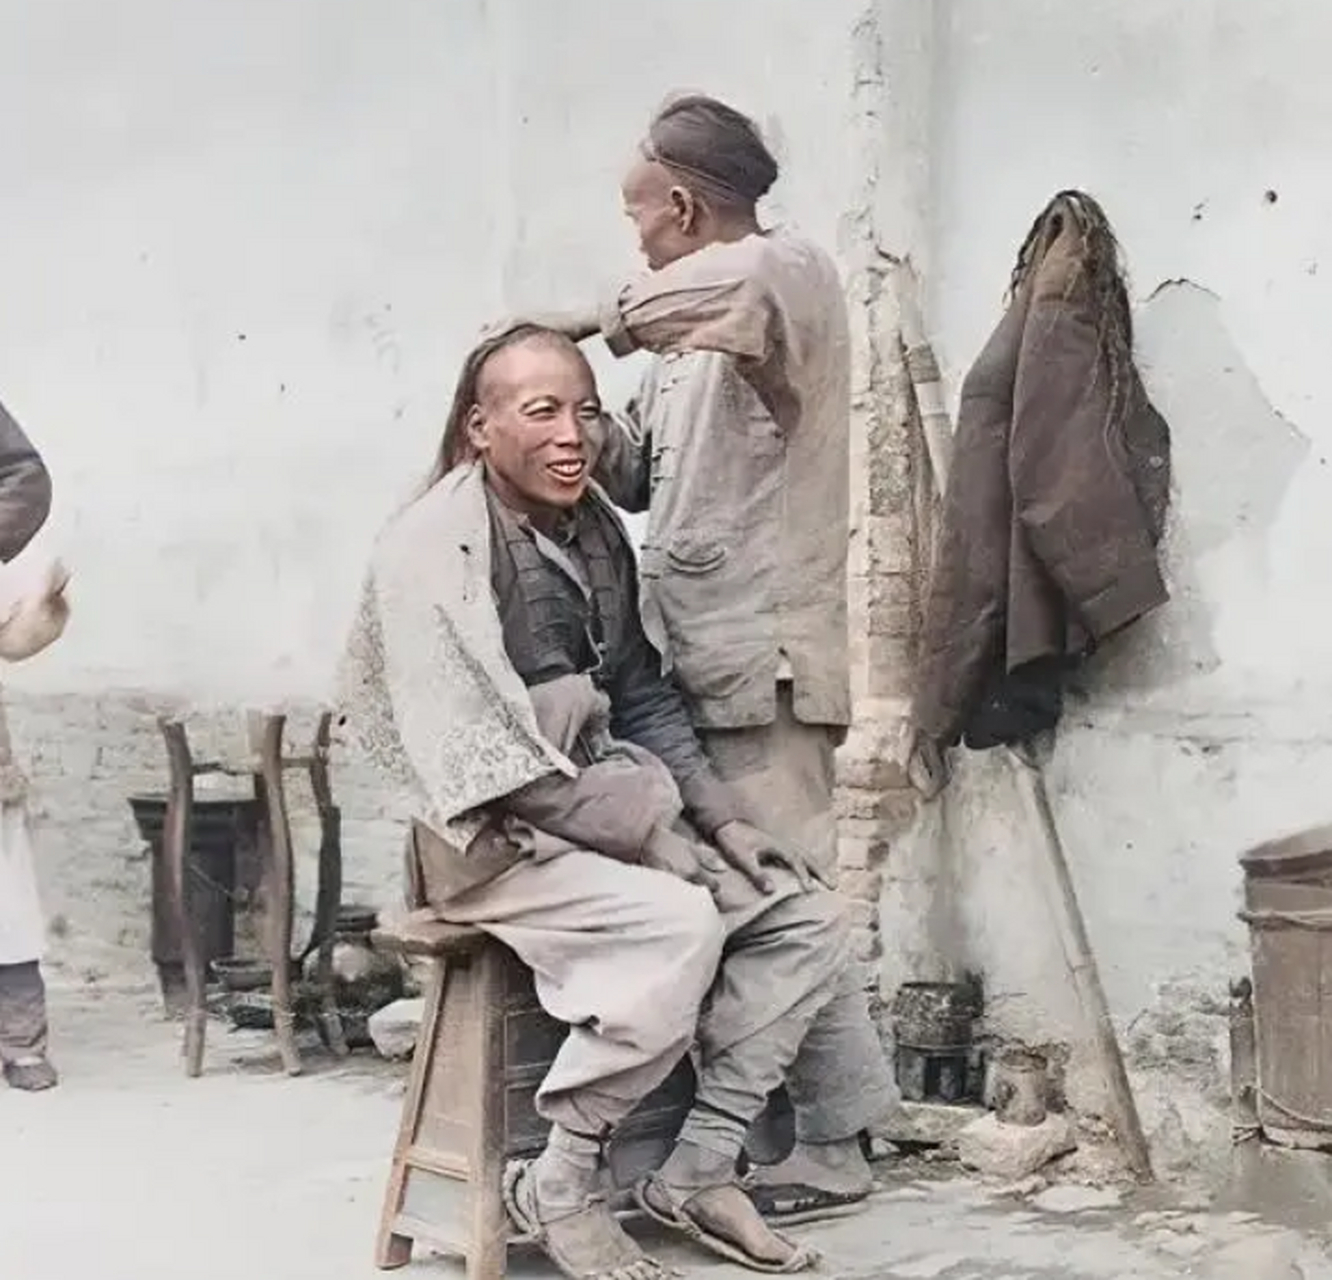 清朝老照片:这是拍摄于清朝末年的照片,正在理发的男子脸上露出了非常